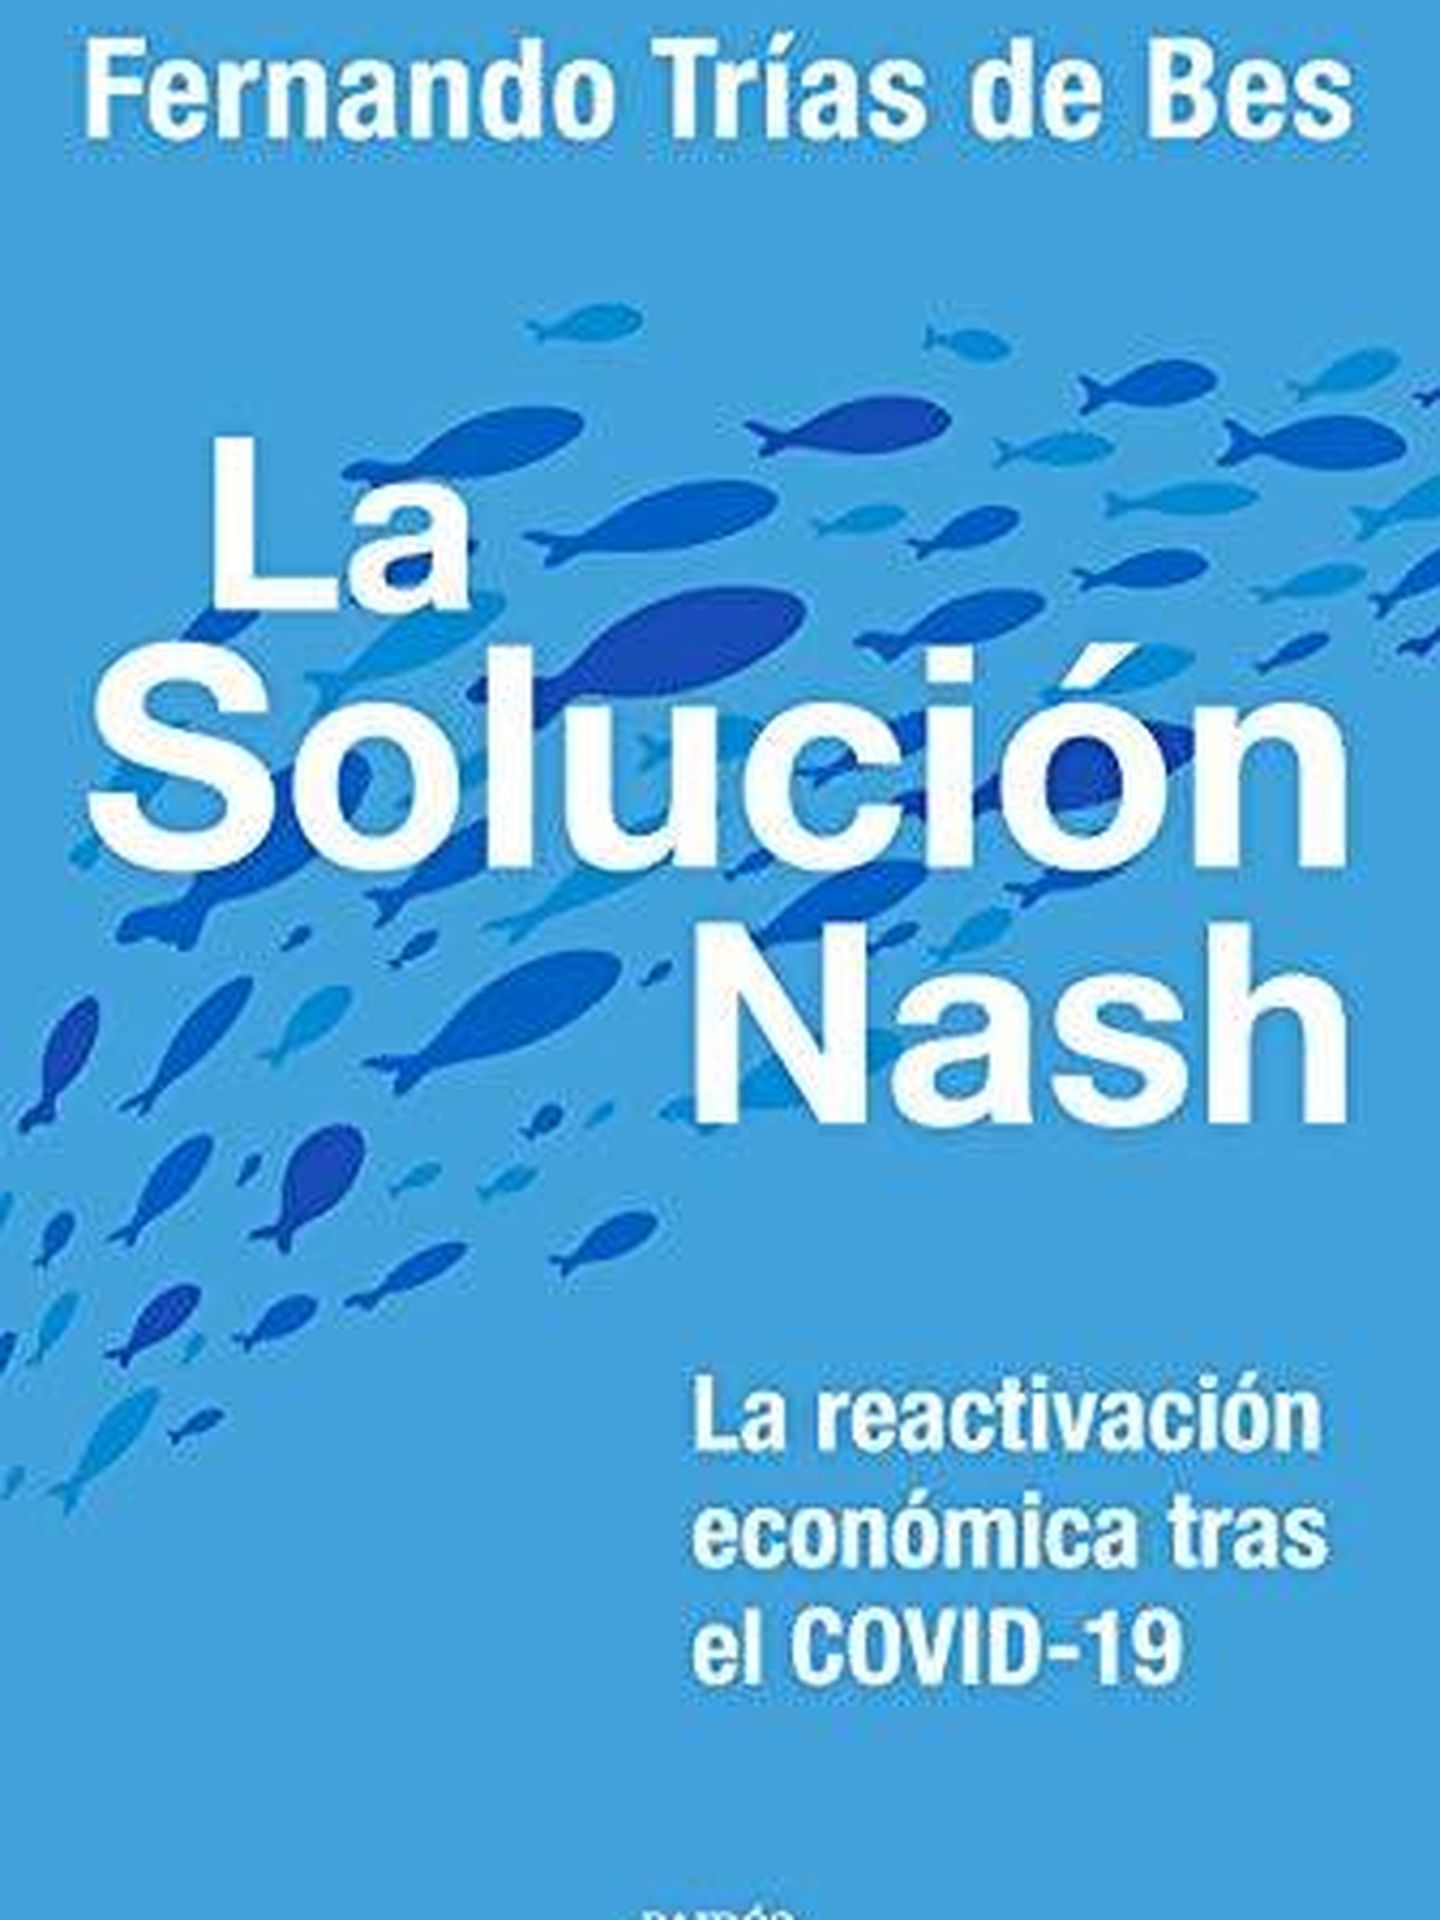 'La solución Nash: La reactivación económica tras el COVID-19'